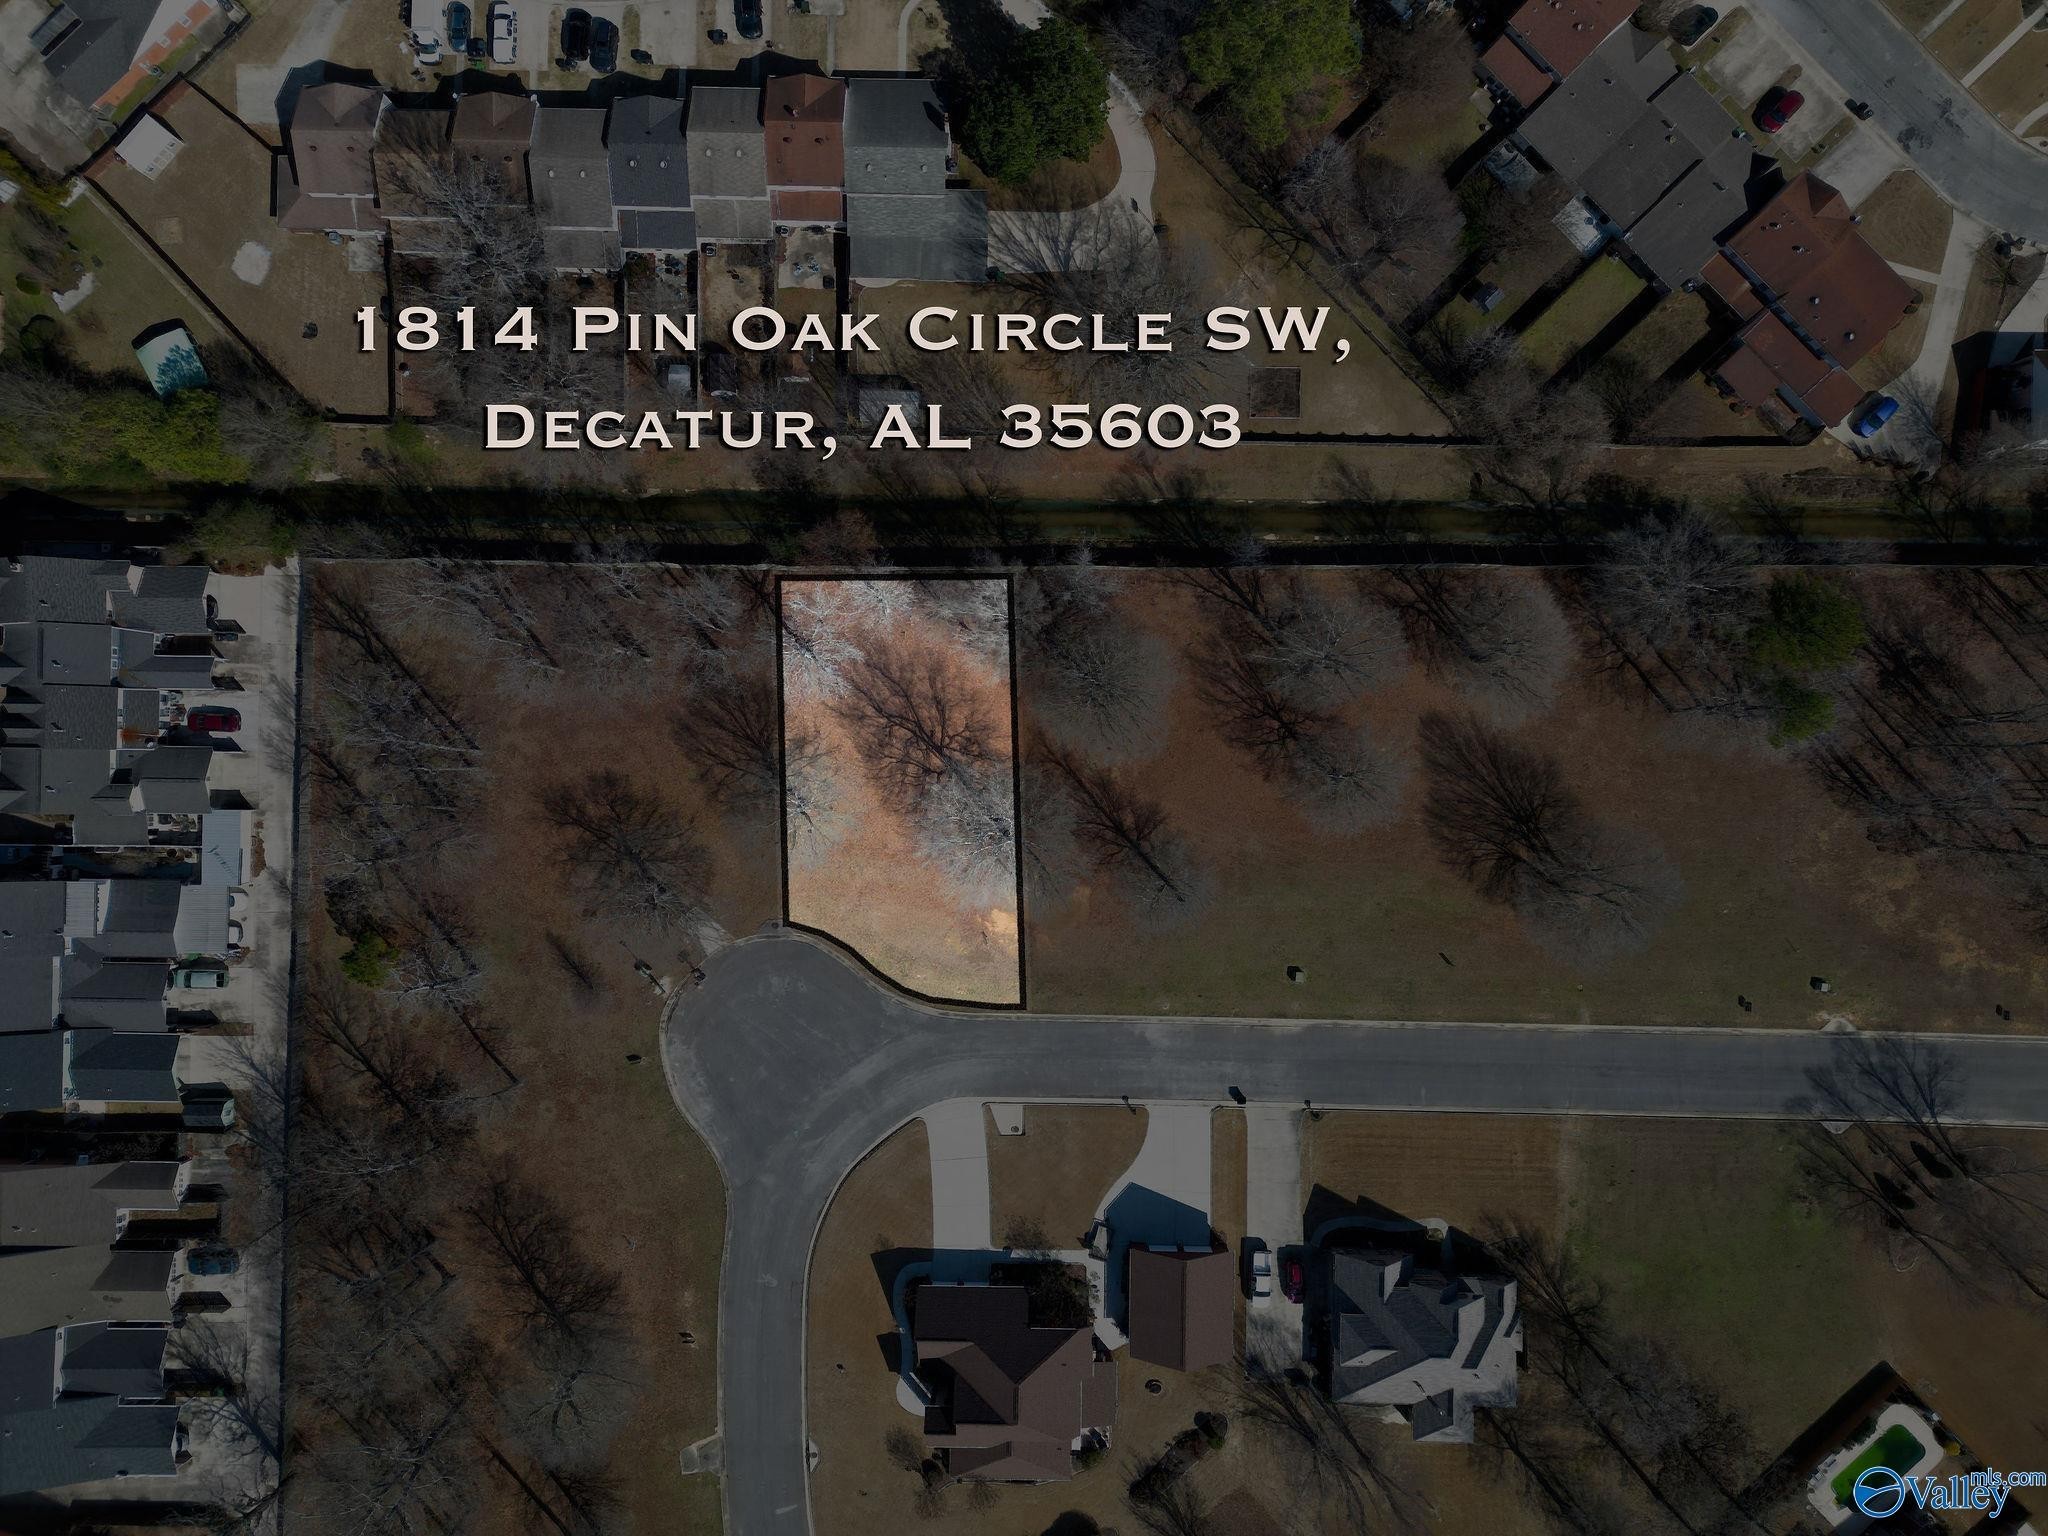 2. 1814 Pin Oak Circle SW